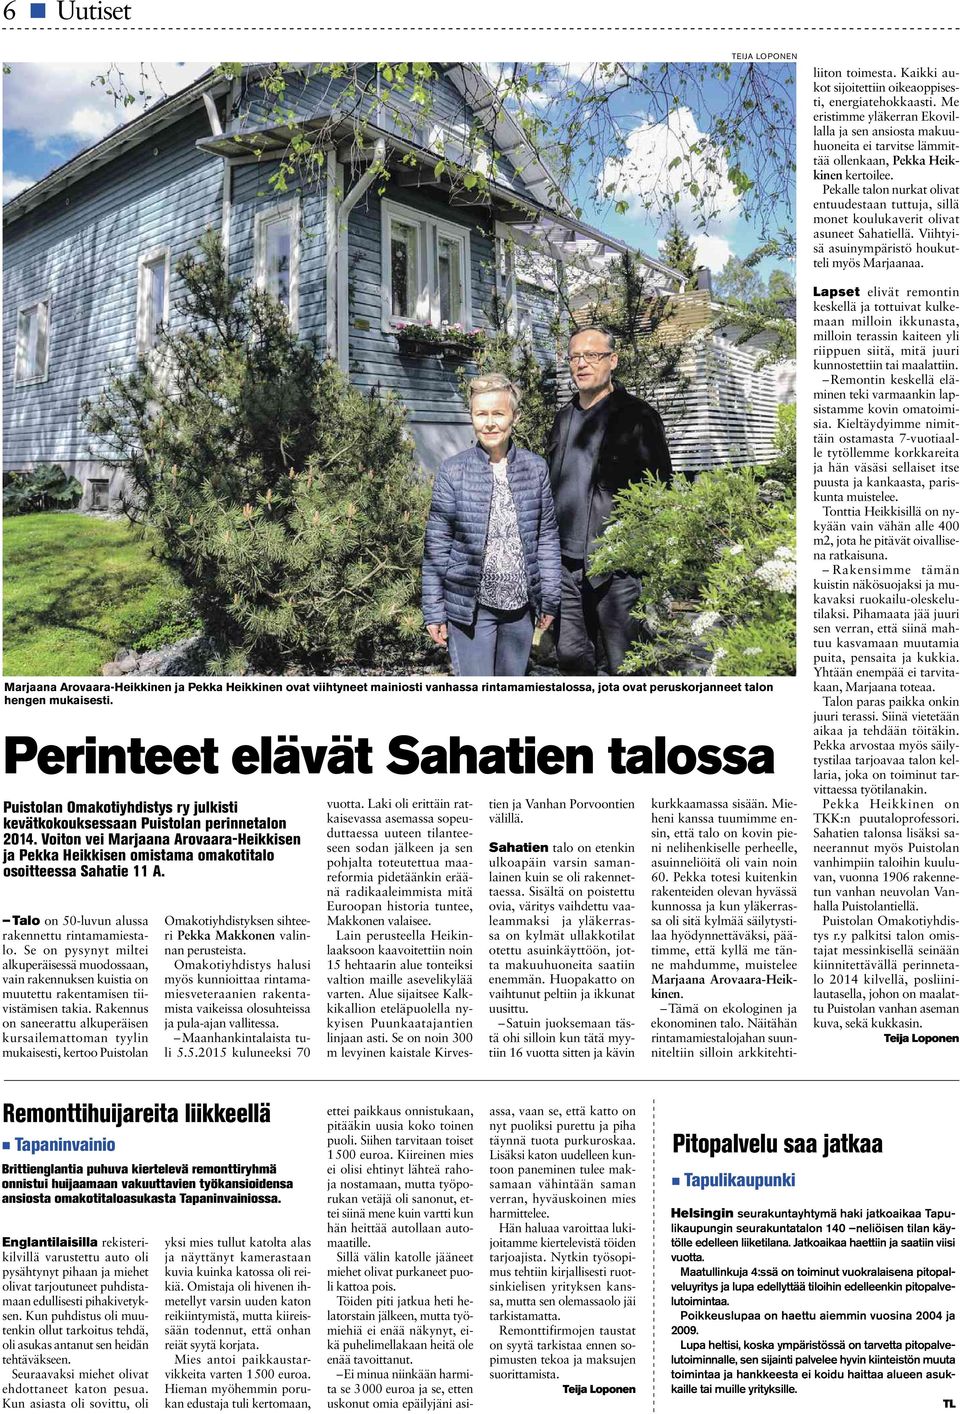 Voiton vei Marjaana Arovaara-Heikkisen ja Pekka Heikkisen omistama omakotitalo osoitteessa Sahatie 11 A. Talo on 50-luvun alussa rakennettu rintamamiestalo.